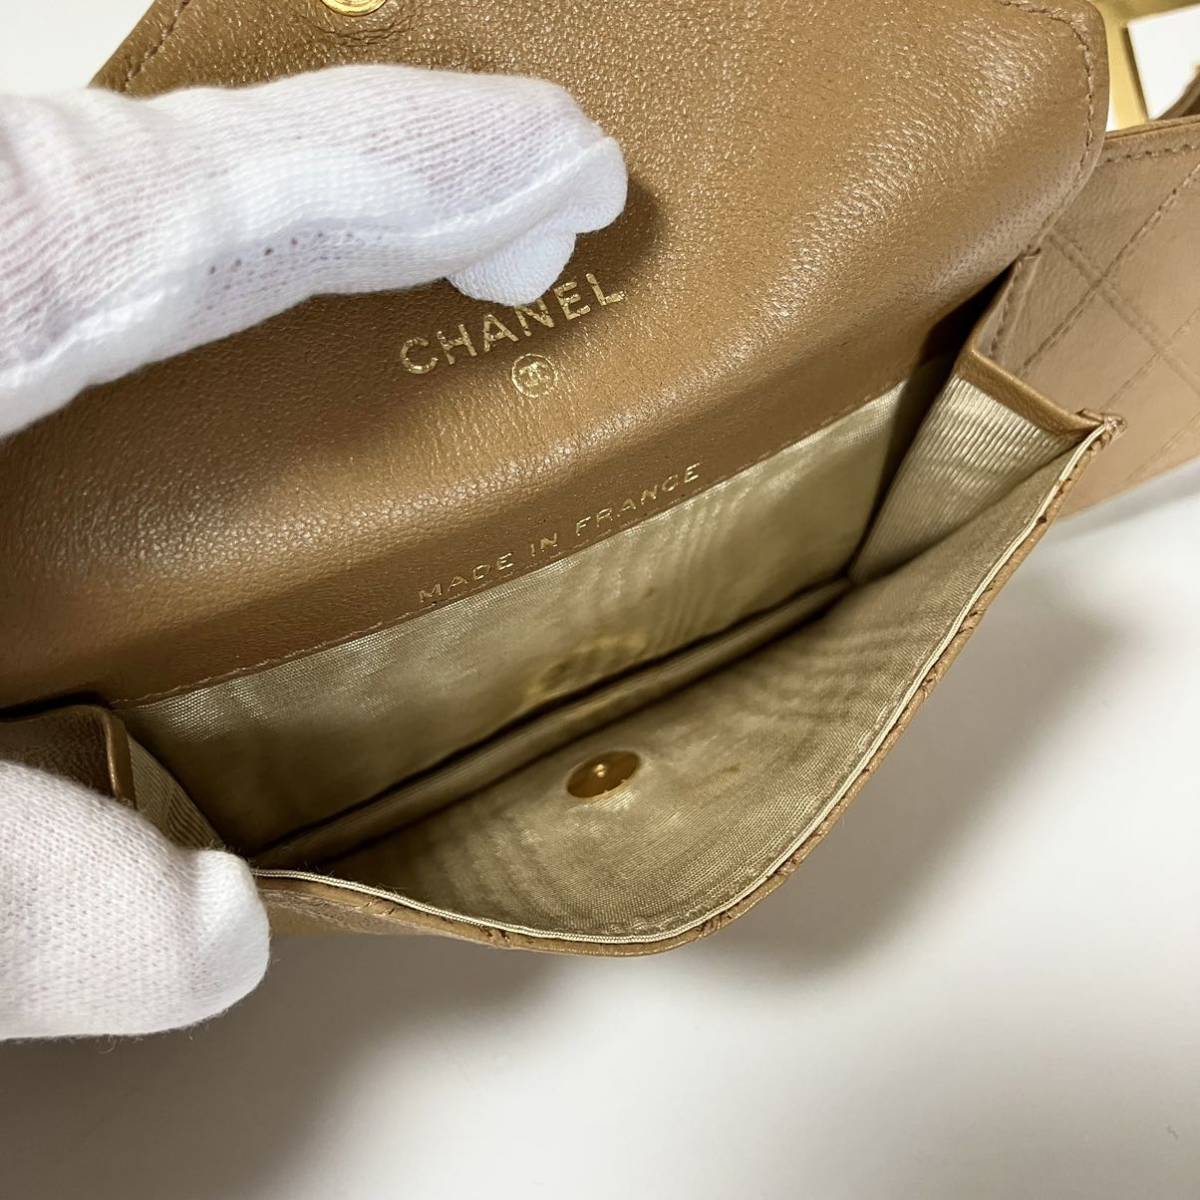  редкость CHANEL Chanel pi colore ремень поясная сумка Brown чай цвет *